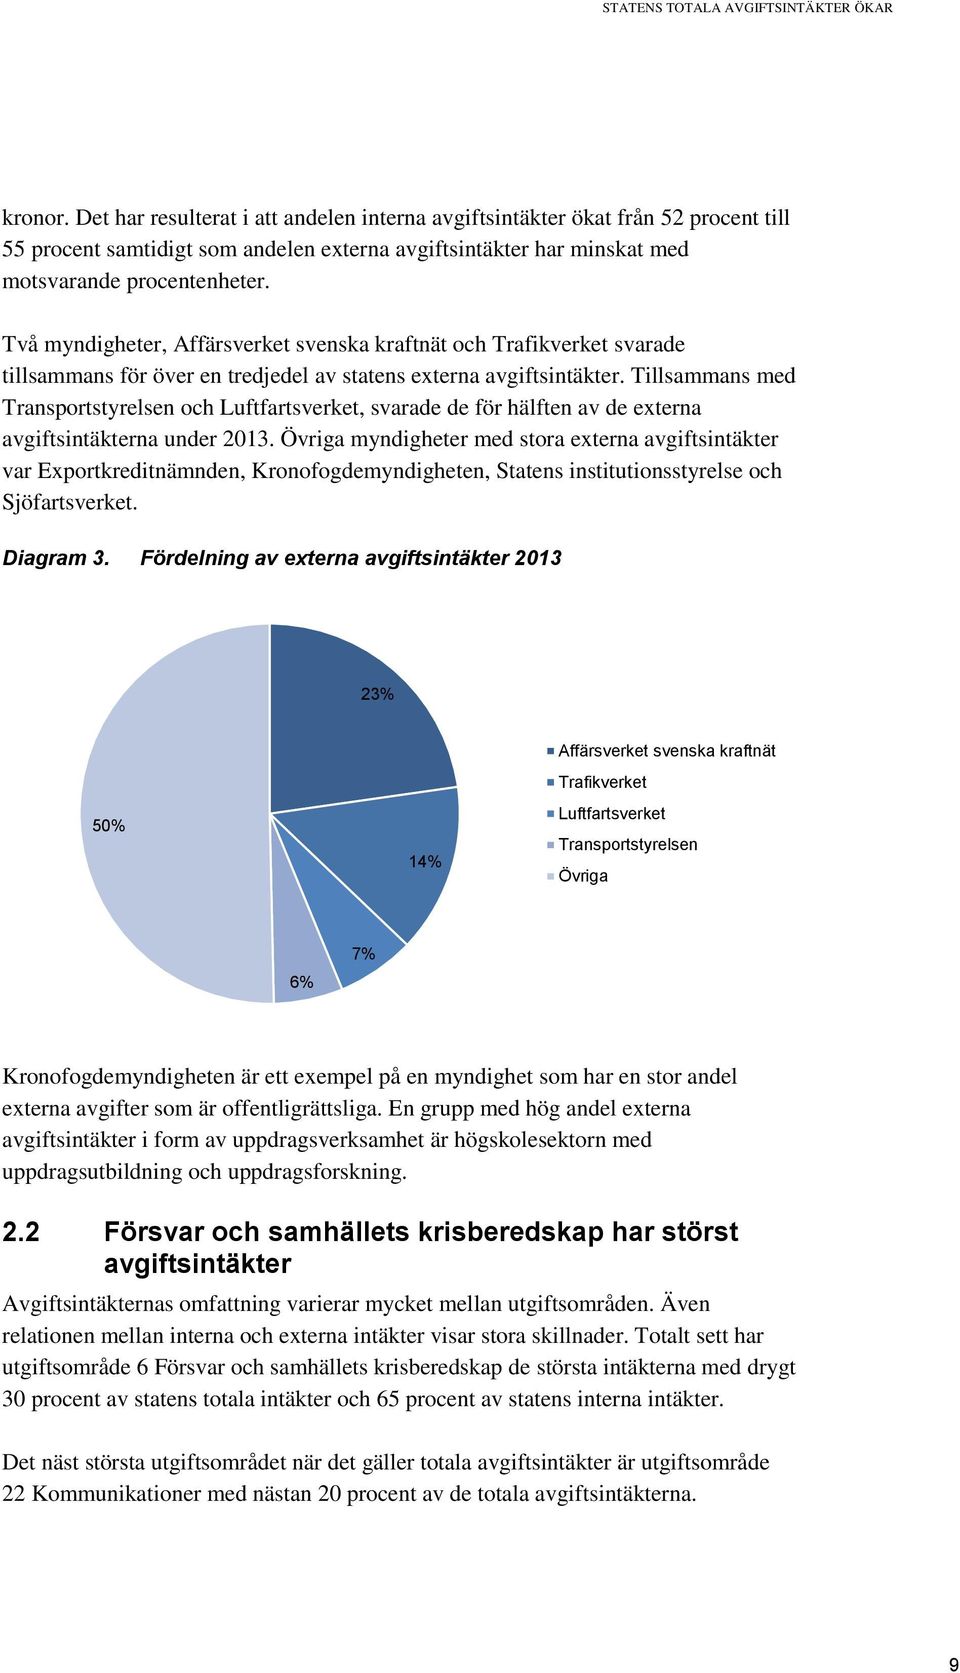 Två myndigheter, Affärsverket svenska kraftnät och Trafikverket svarade tillsammans för över en tredjedel av statens externa avgiftsintäkter.